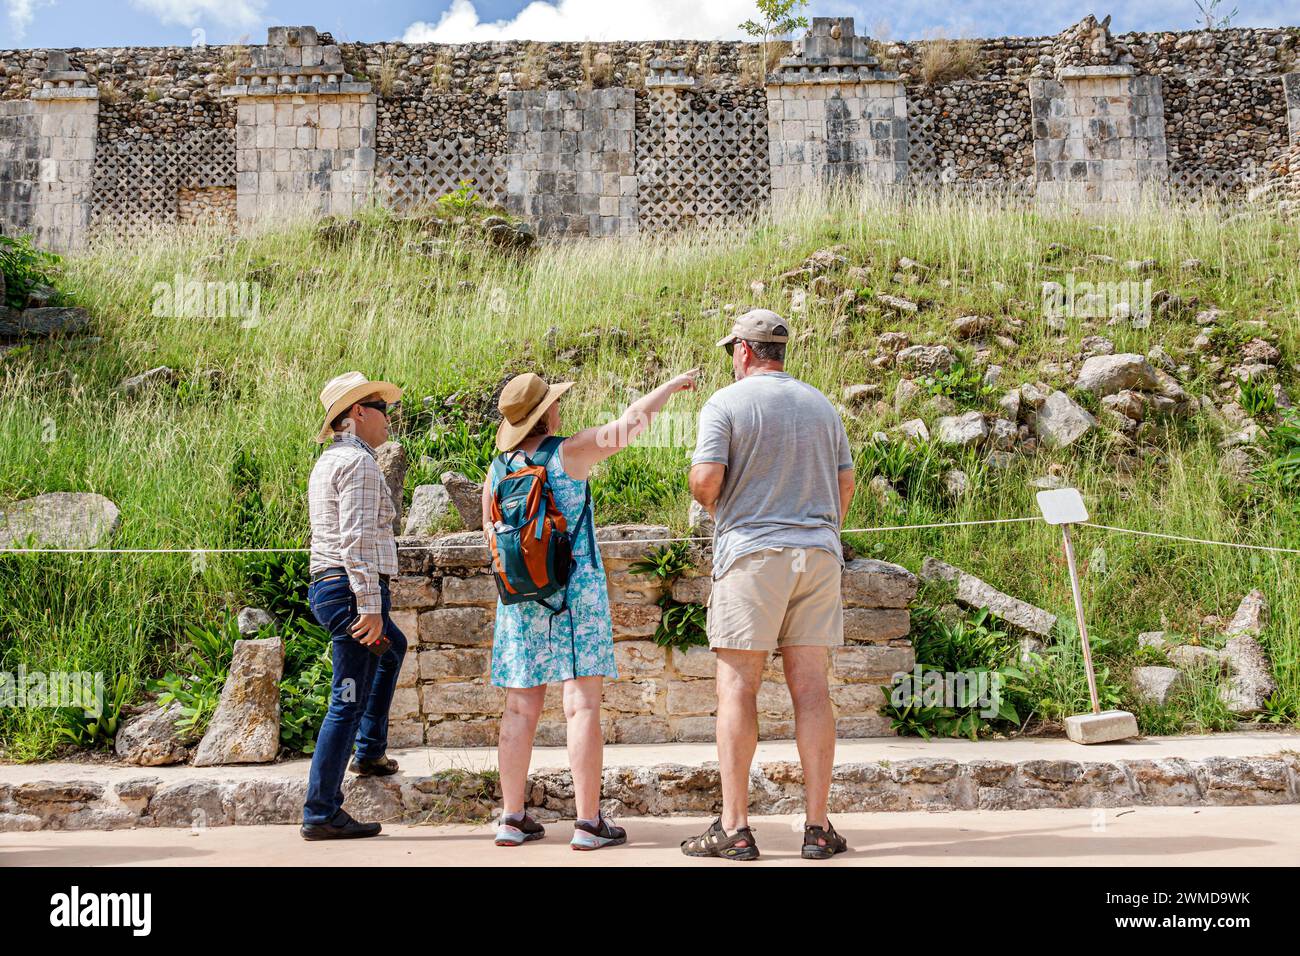 Merida Messico, sito archeologico Uxmal in stile Puuc, zona Arqueologica de Uxmal, classico pietra calcarea della città maya, visitatori uomini uomini, donne donne donne Foto Stock